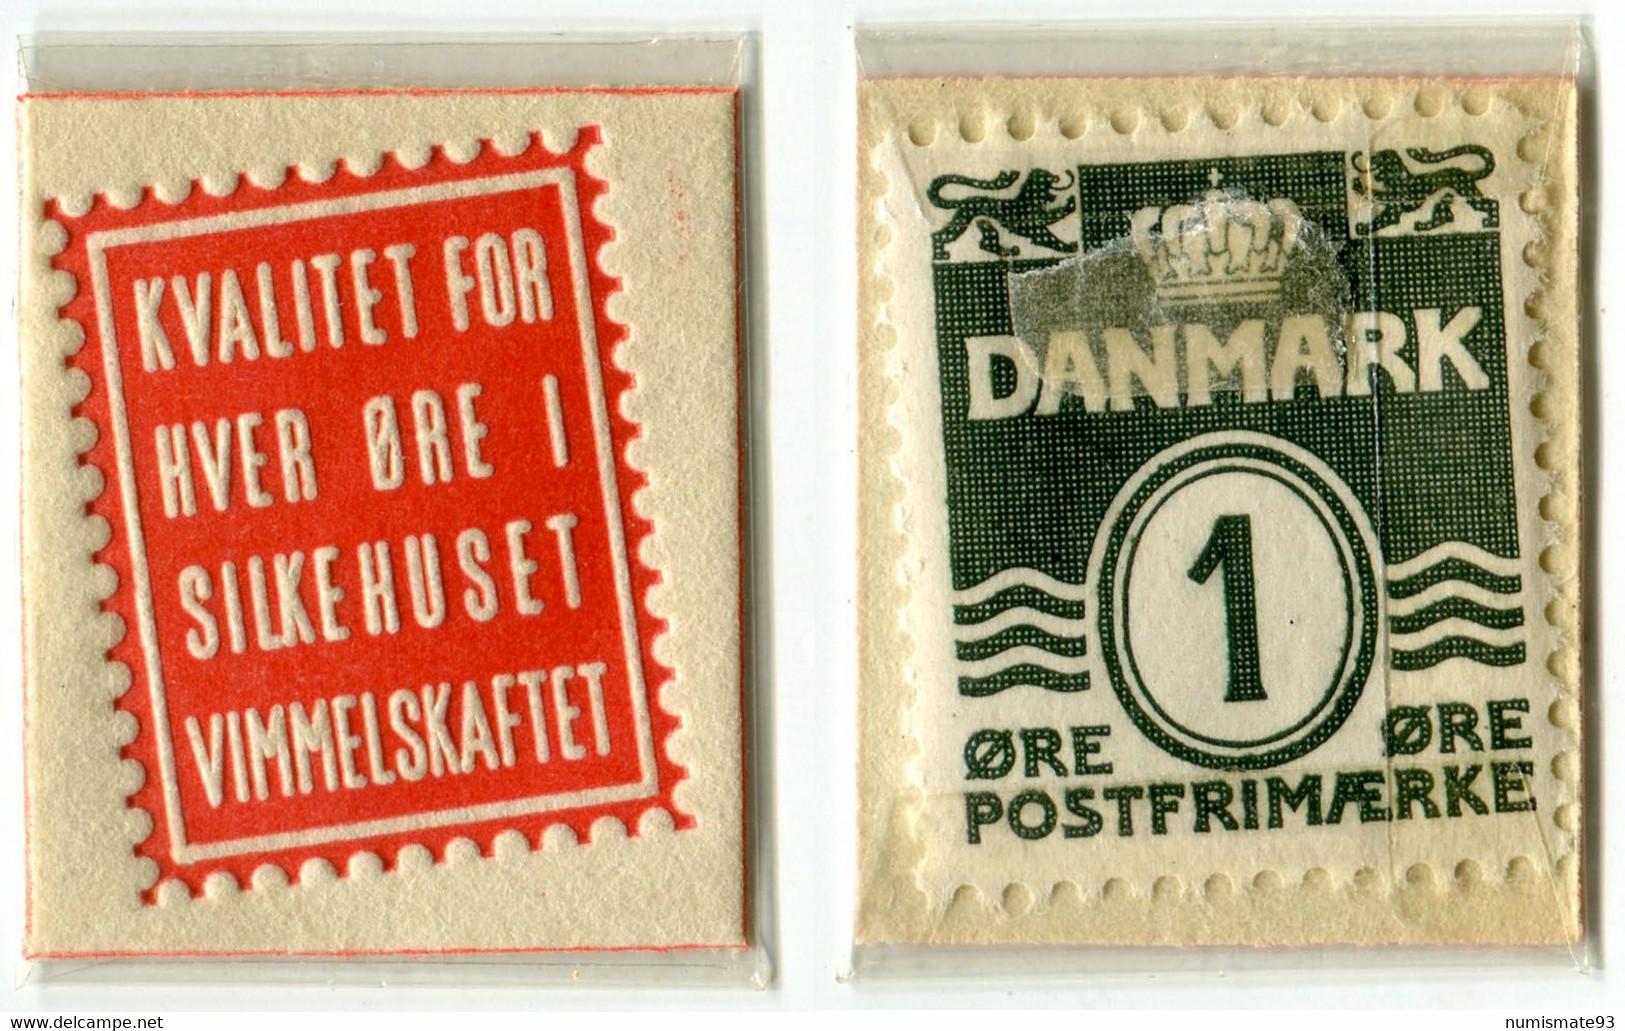 N93-0708 - Timbre-monnaie - Danemark - Kvalitet For Hver øre I Silkehuset Vimmelskaftet - 1 øre - Encased Stamp - Monétaires / De Nécessité